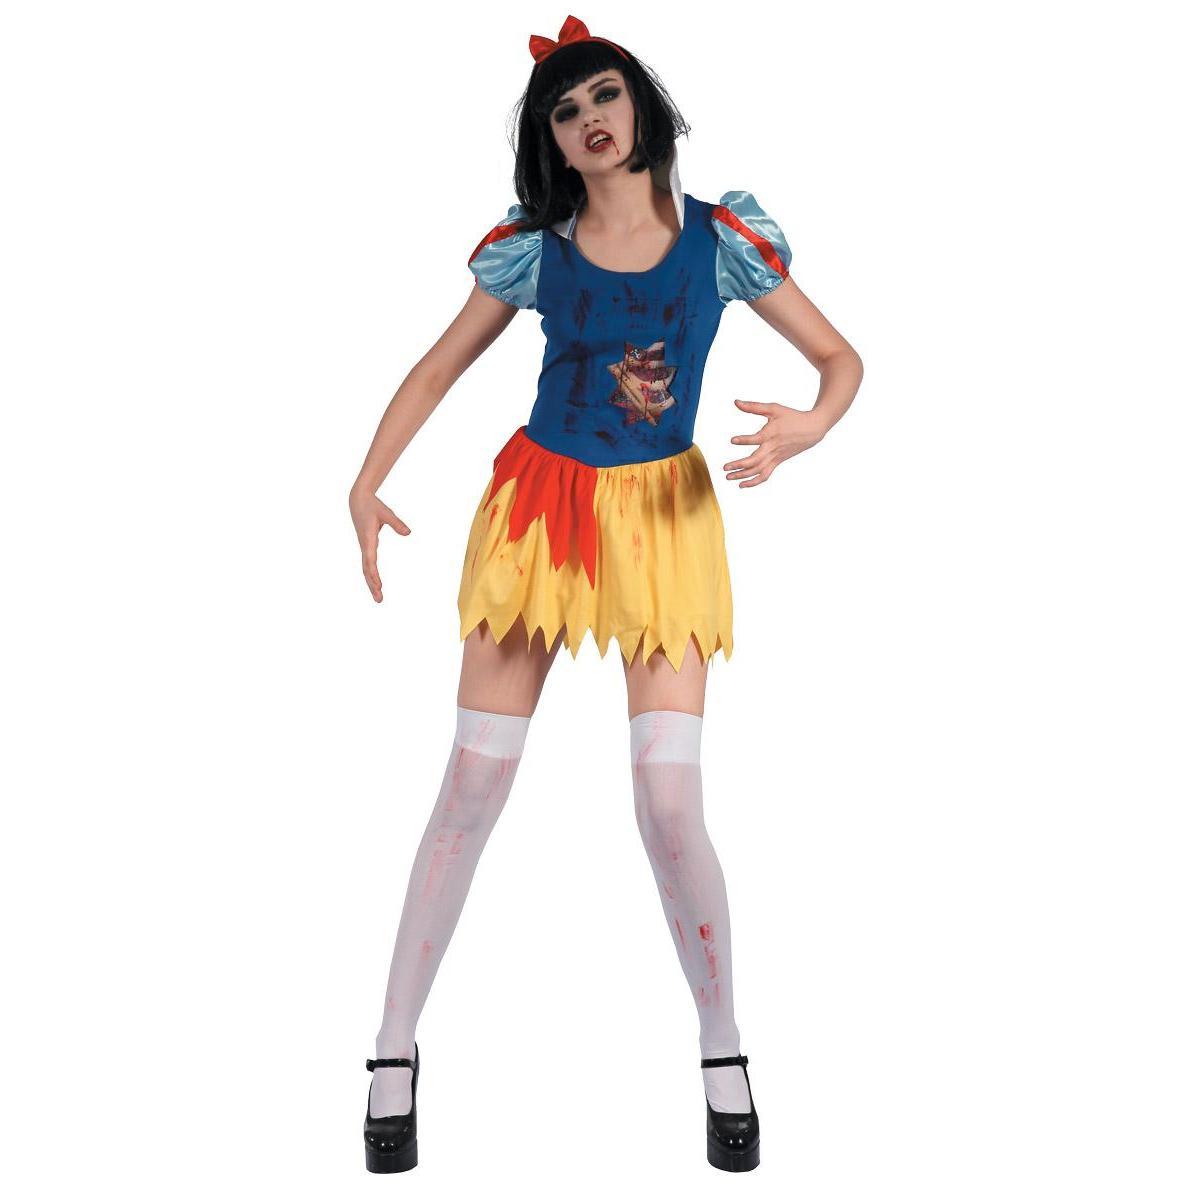 Costume de Princesse zombie - Taille adulte  - L 39 x H 2 x l 29 cm - Multicolore - PTIT CLOWN